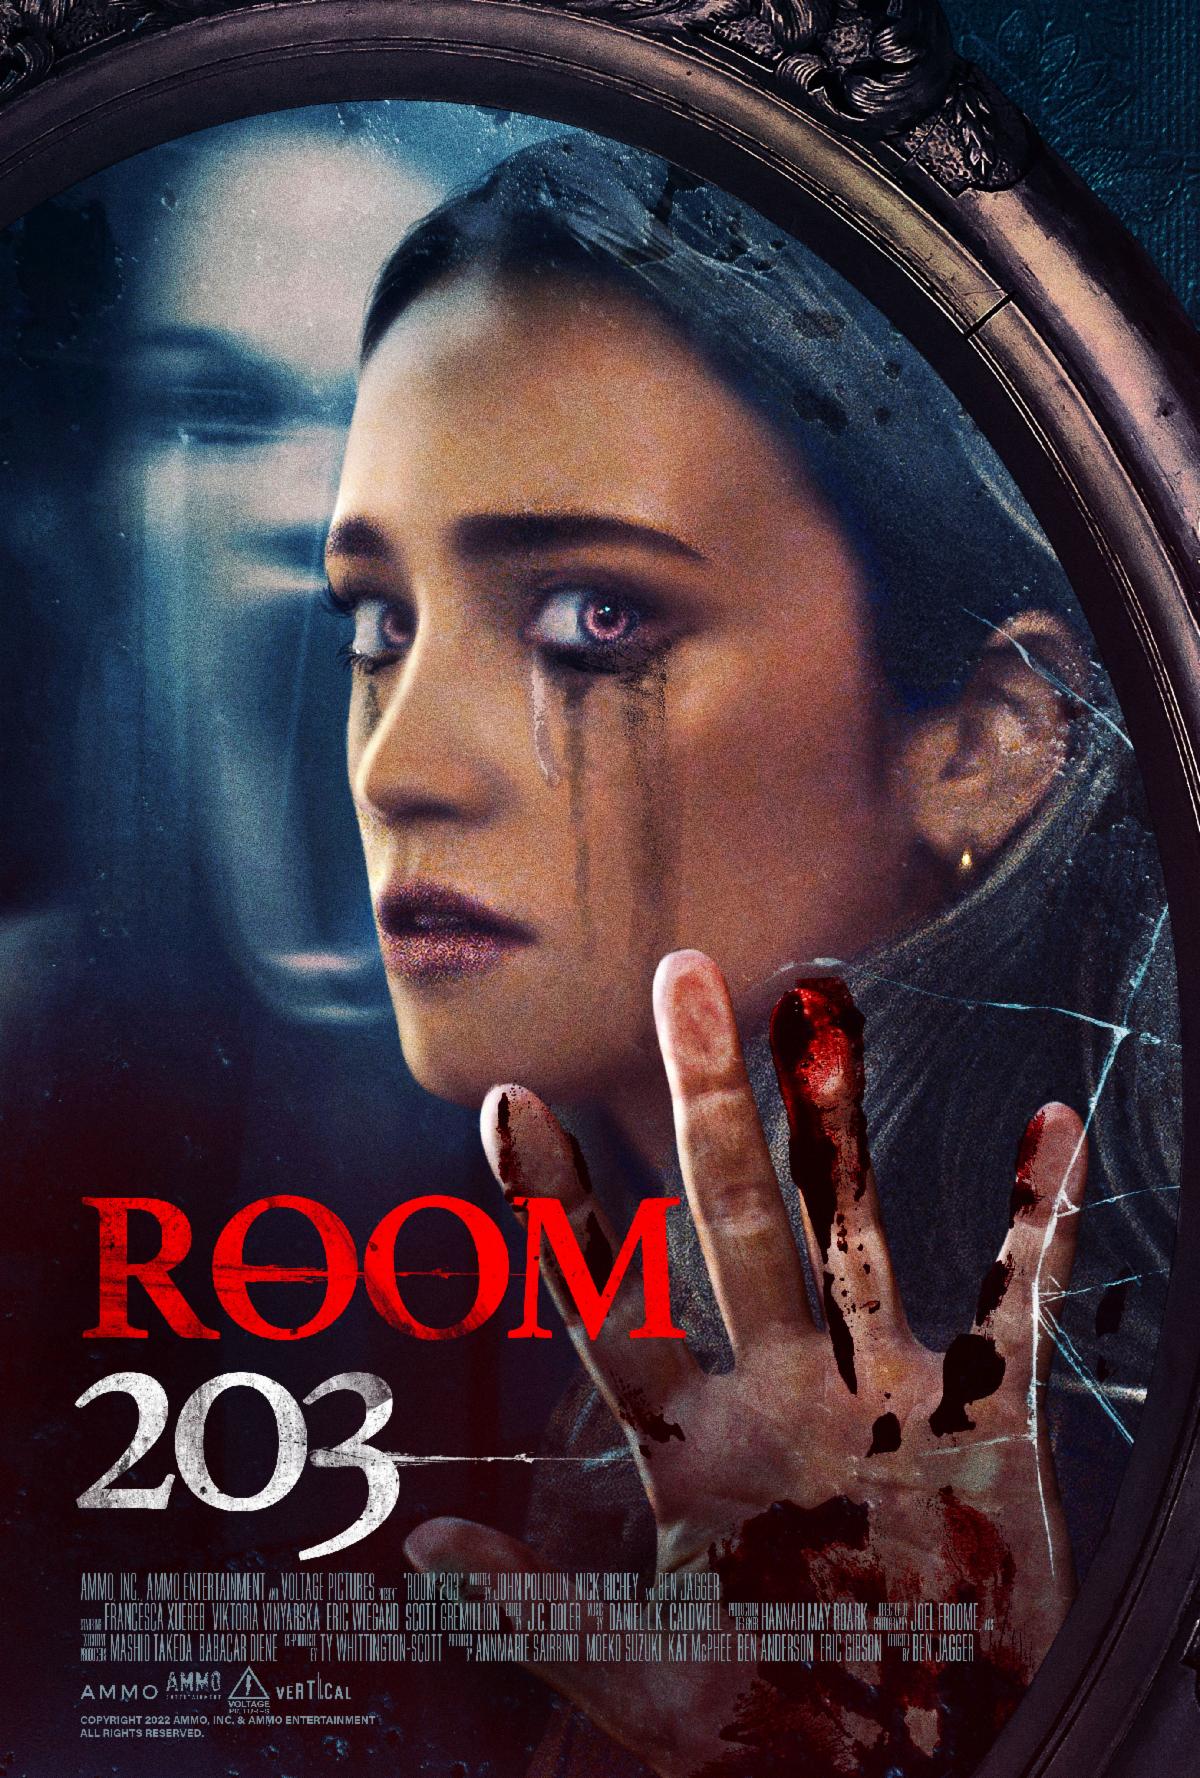 'Room 203' Opens Its Door on VOD April 15